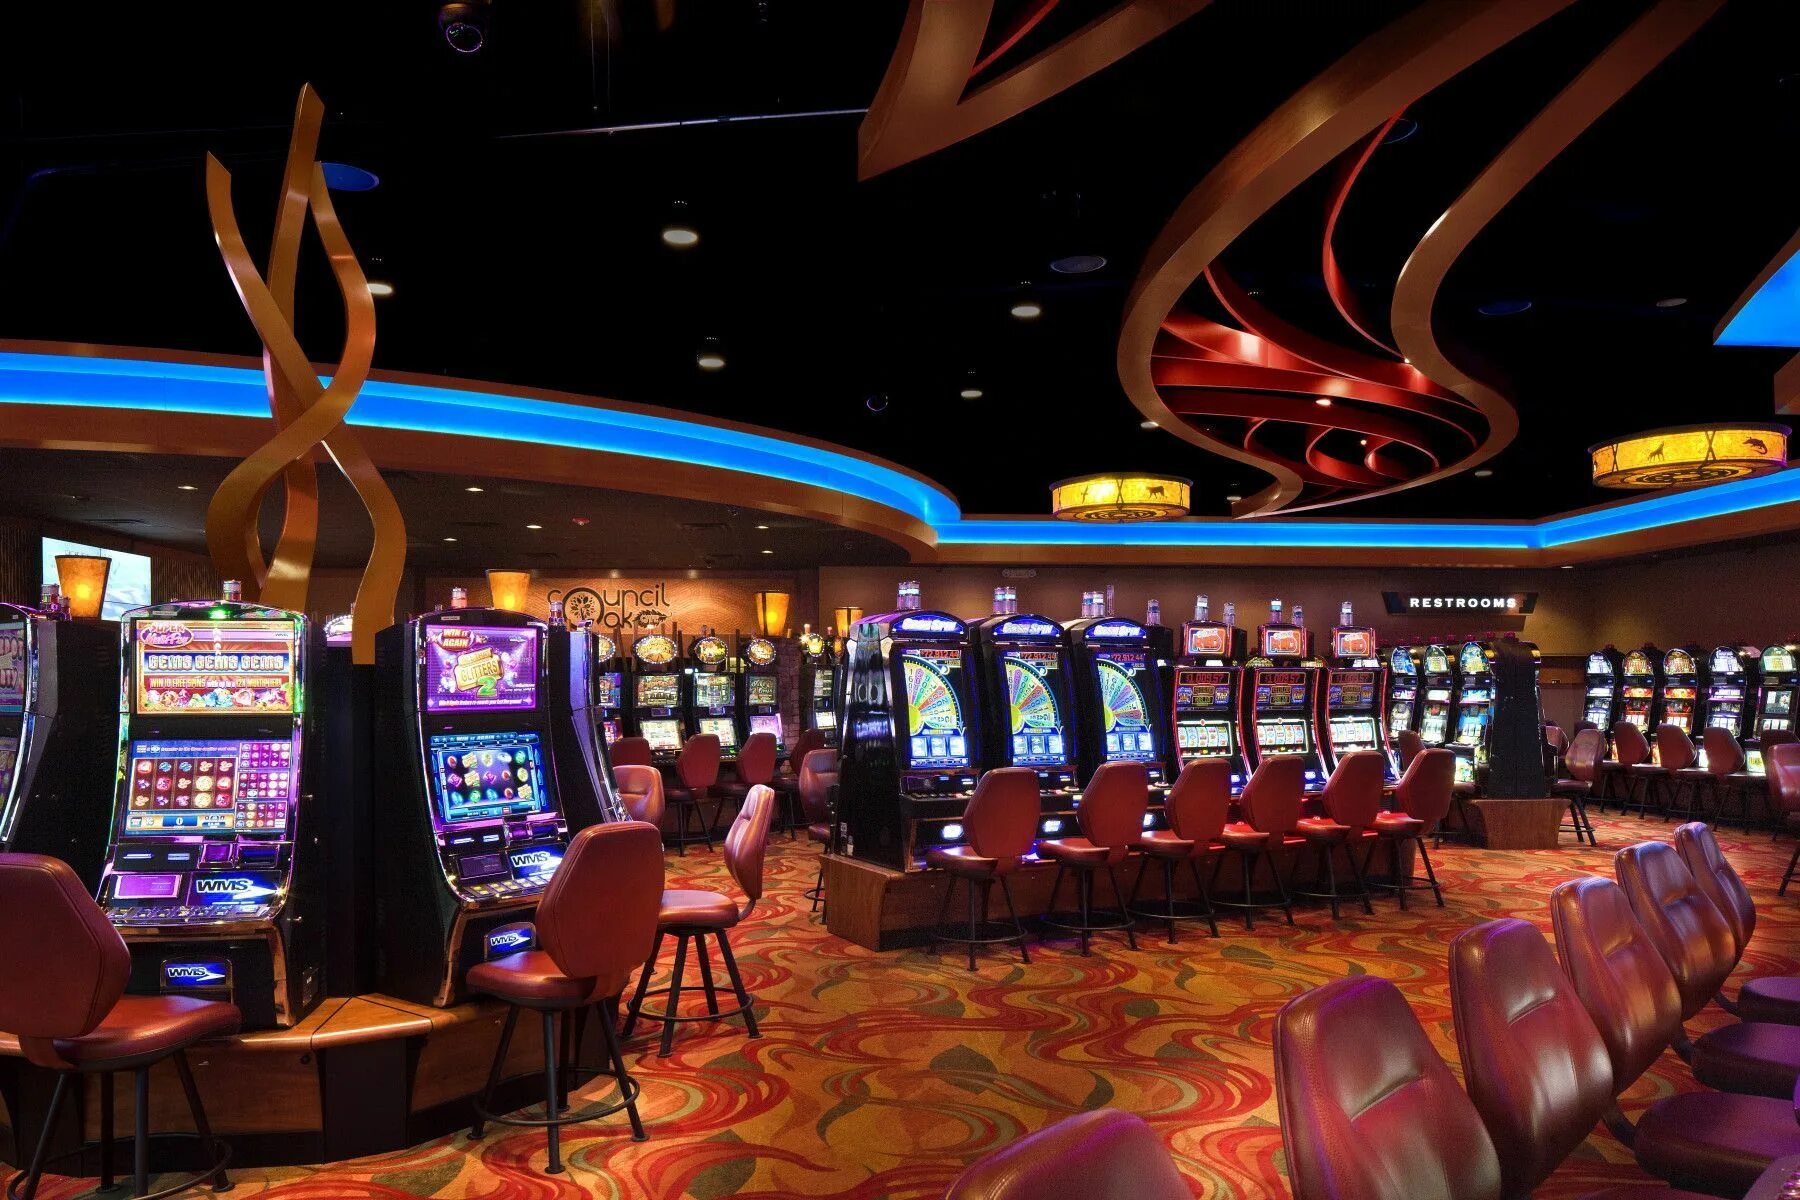 Лас Вегас казино. Club Vegas игровые автоматы казино Лас Вегаса. Казино Лас Вегас внутри. Игровой зал казино Луксор в Лас Вегасе. Casino x casino party